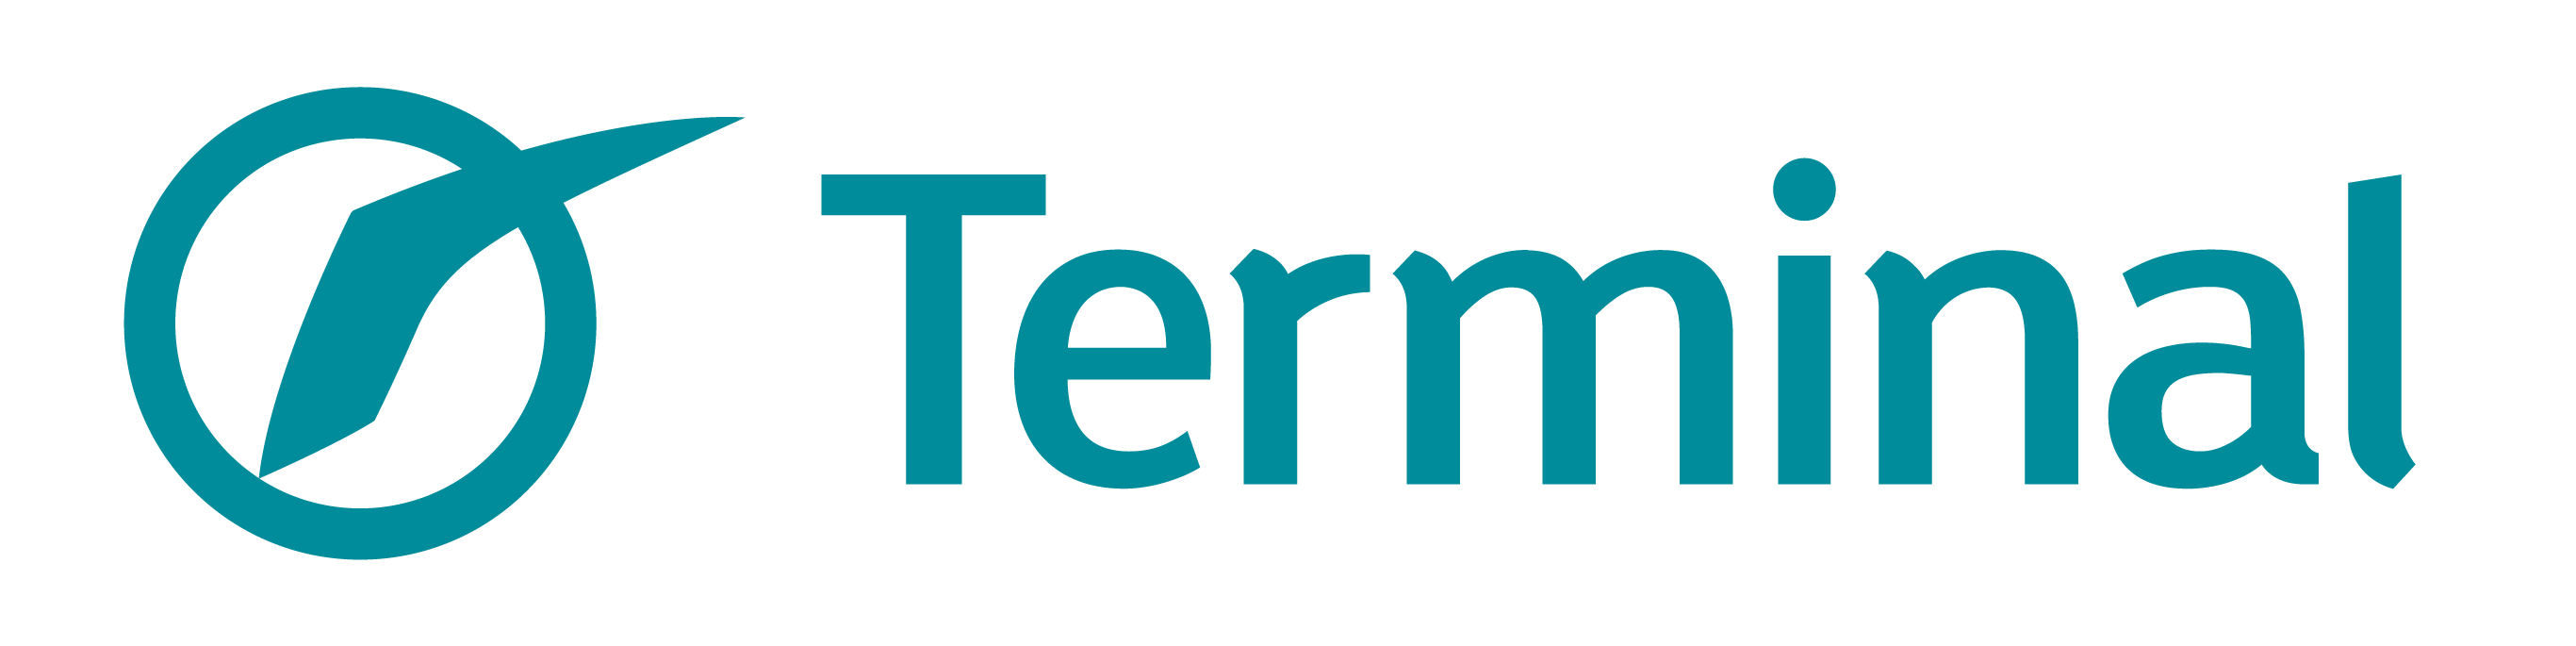 Tartu Terminal Logo ai to